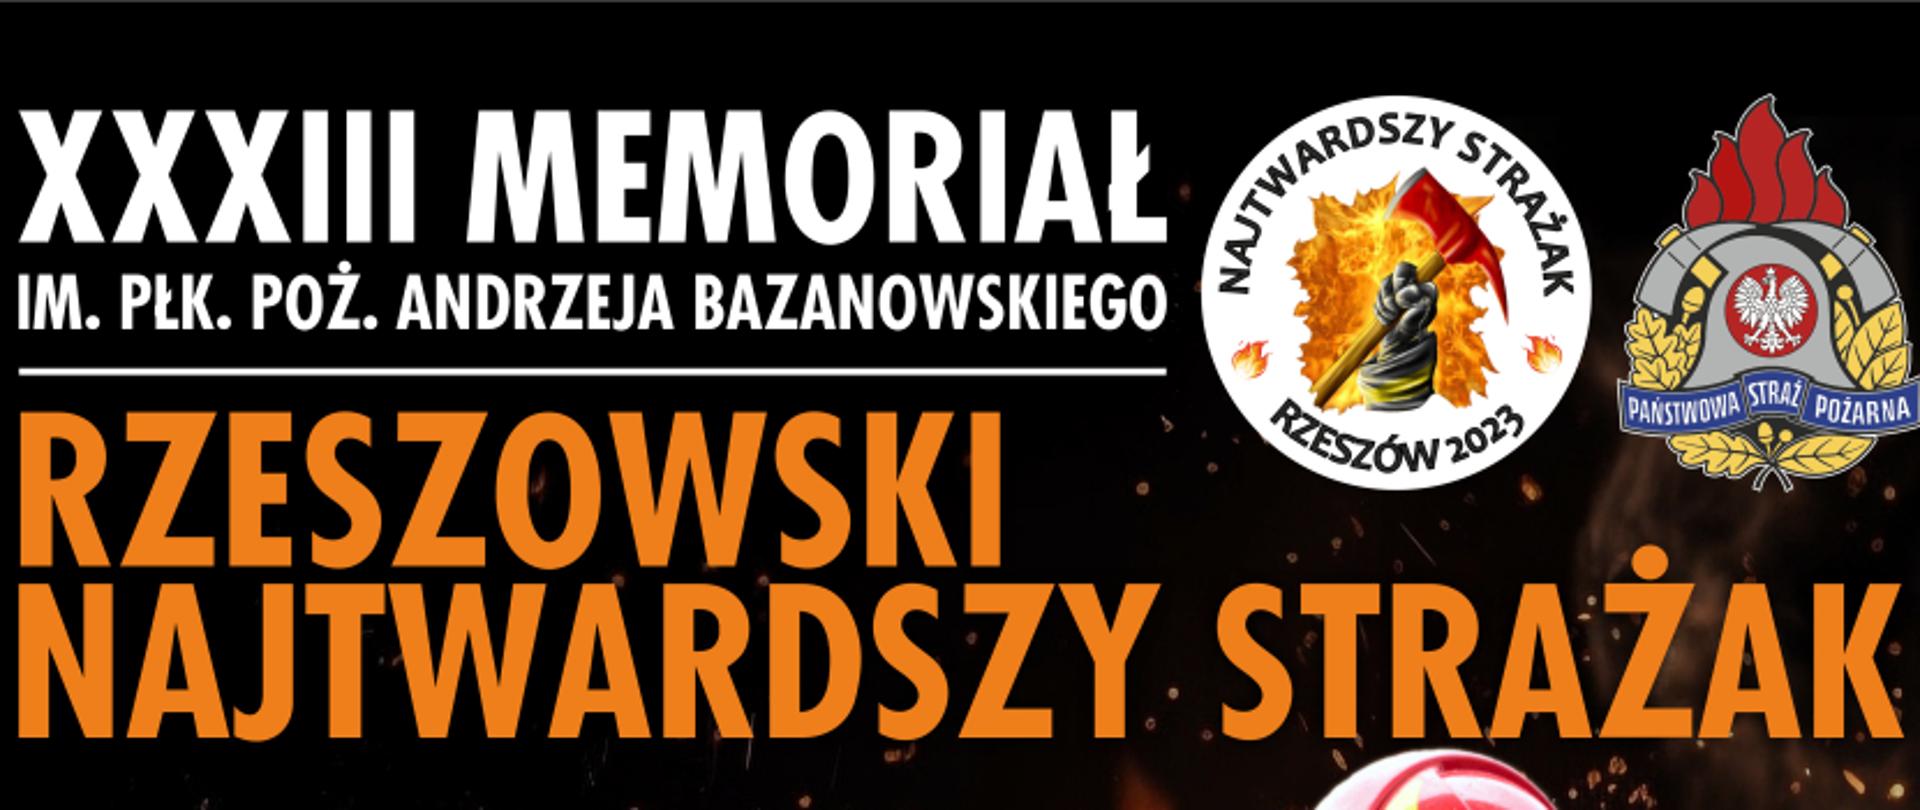 Zdjęcie przedstawia plakat z informacjami o XXXIII Memoriale im. płk. poż. Andrzeja Bazanowskiego w formule "Najtwardszy Strażak" połączone z piknikiem strażackim.